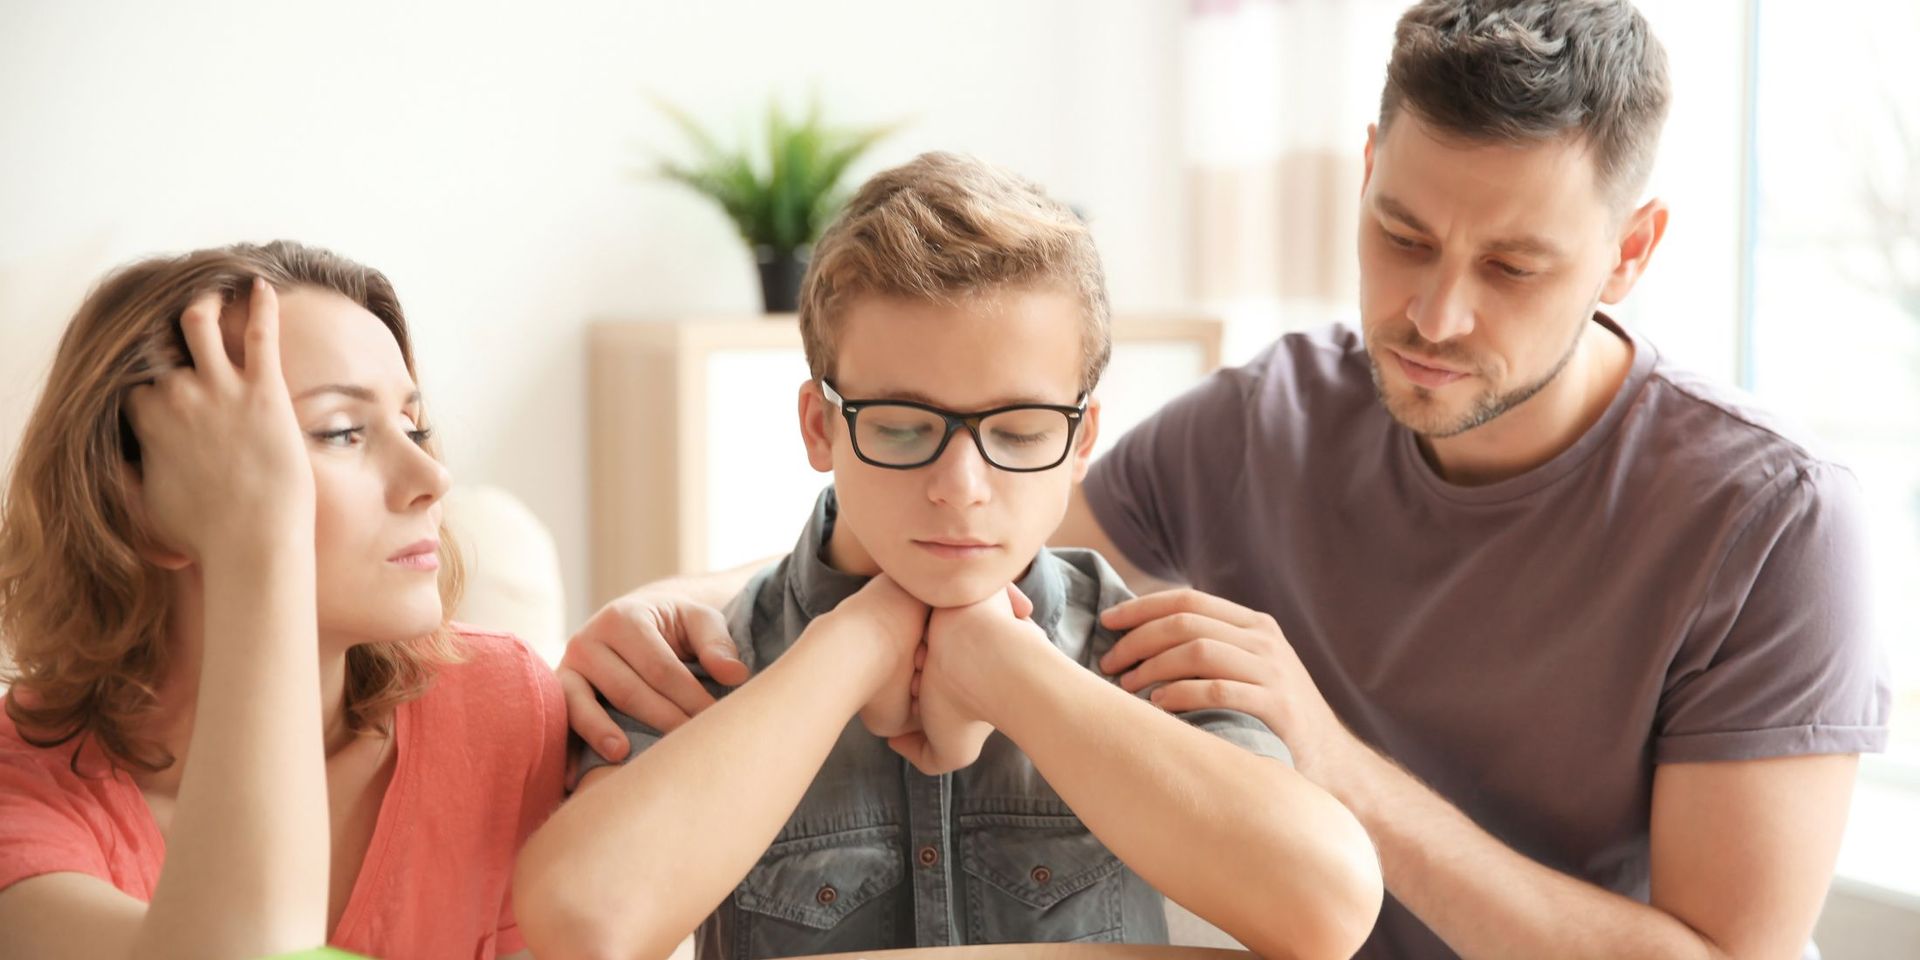 Pályaorientáció – Így segítsünk jól szülőként 2. rész